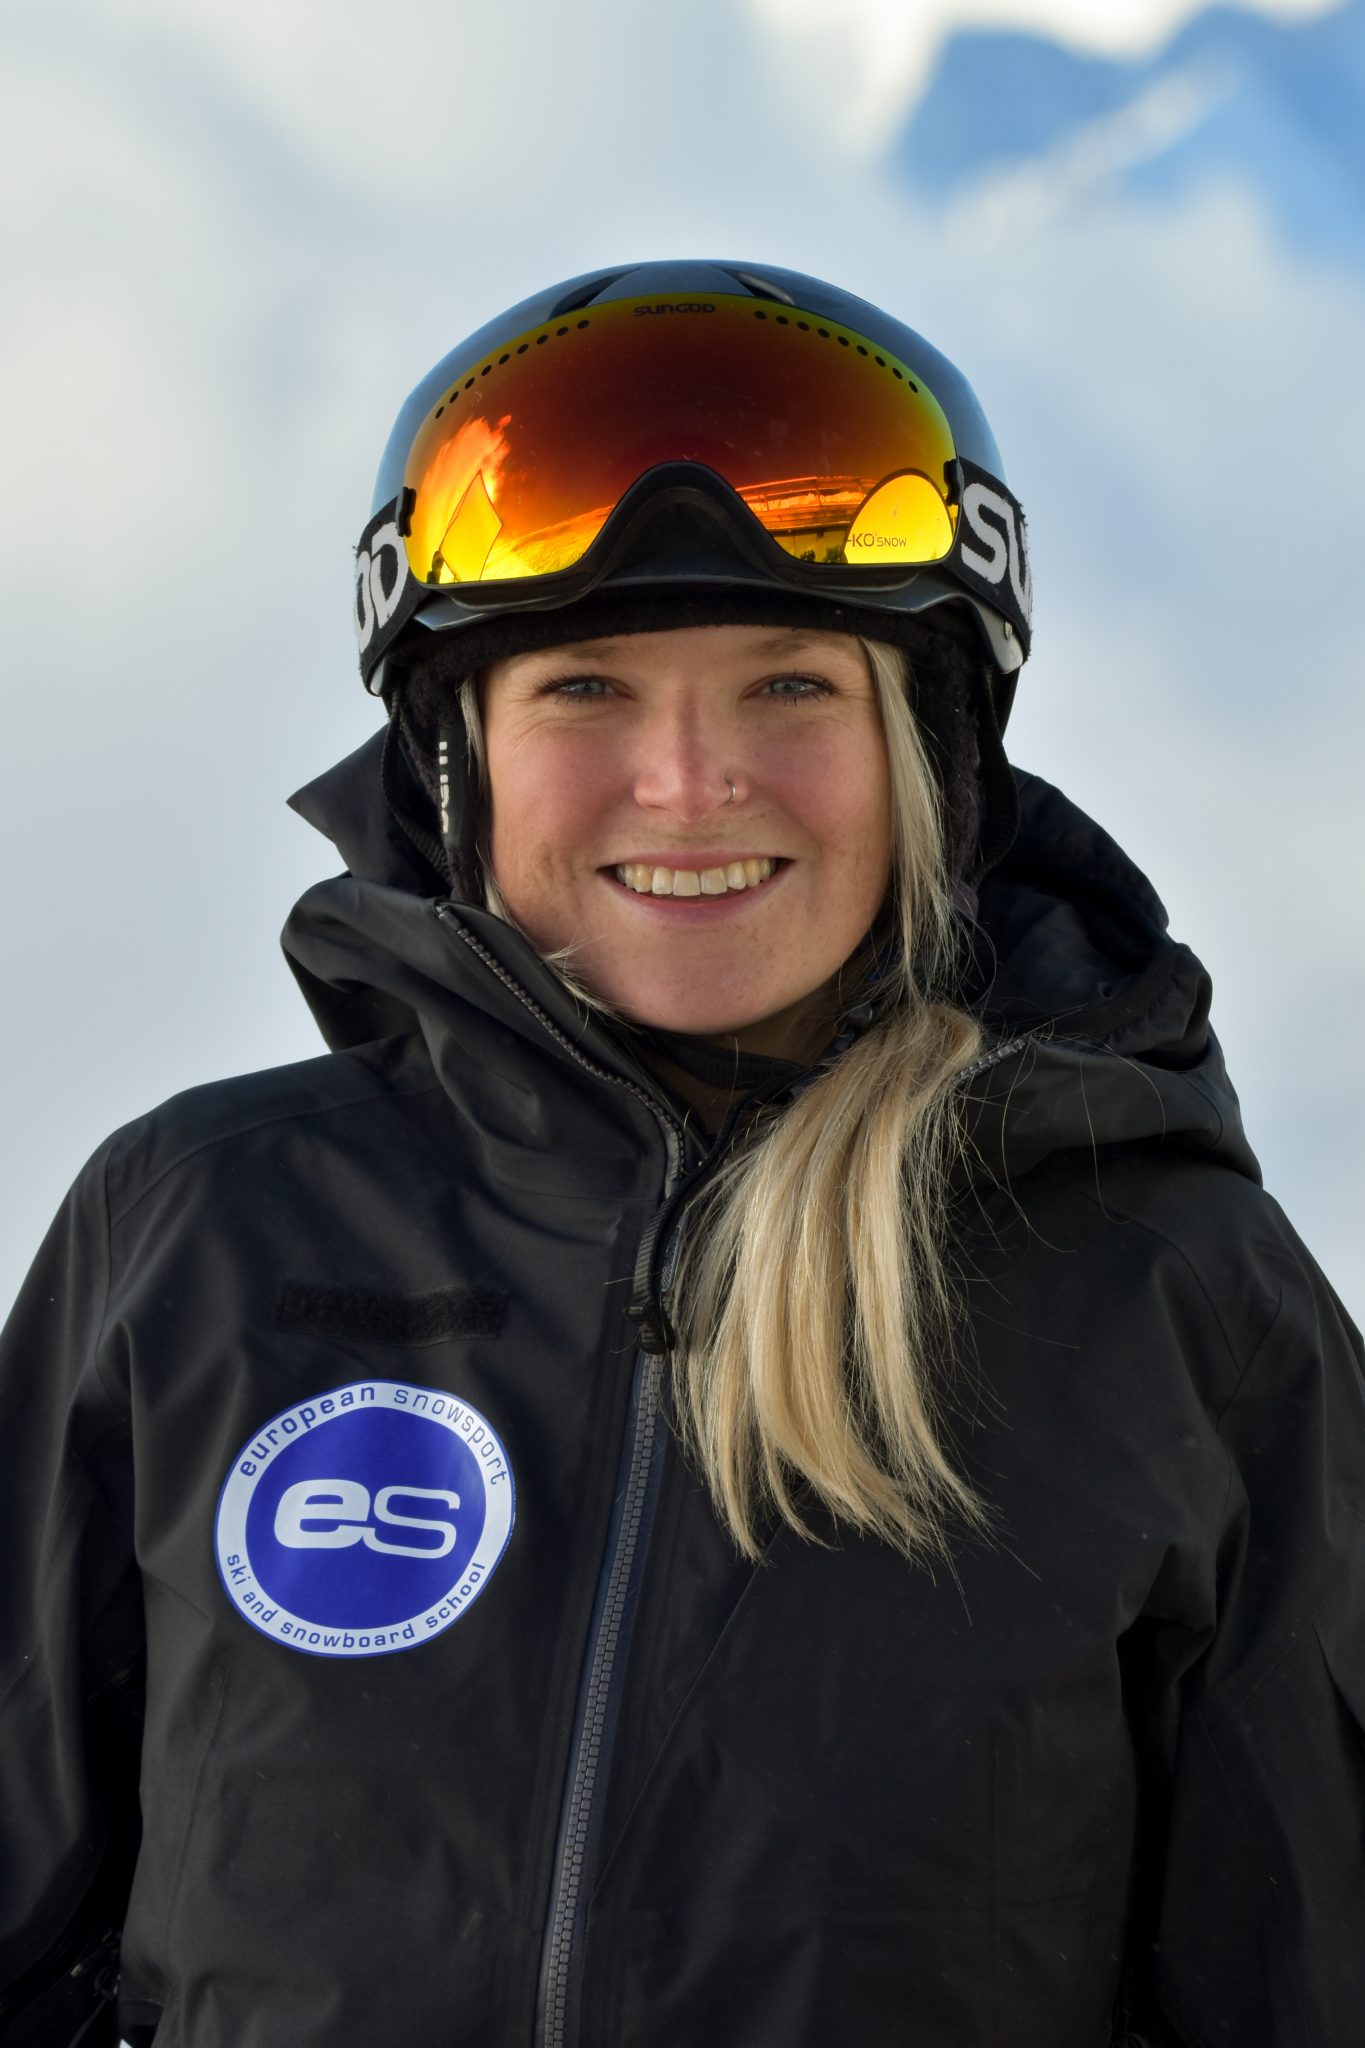 ES Ski Instructor Kate in Verbier